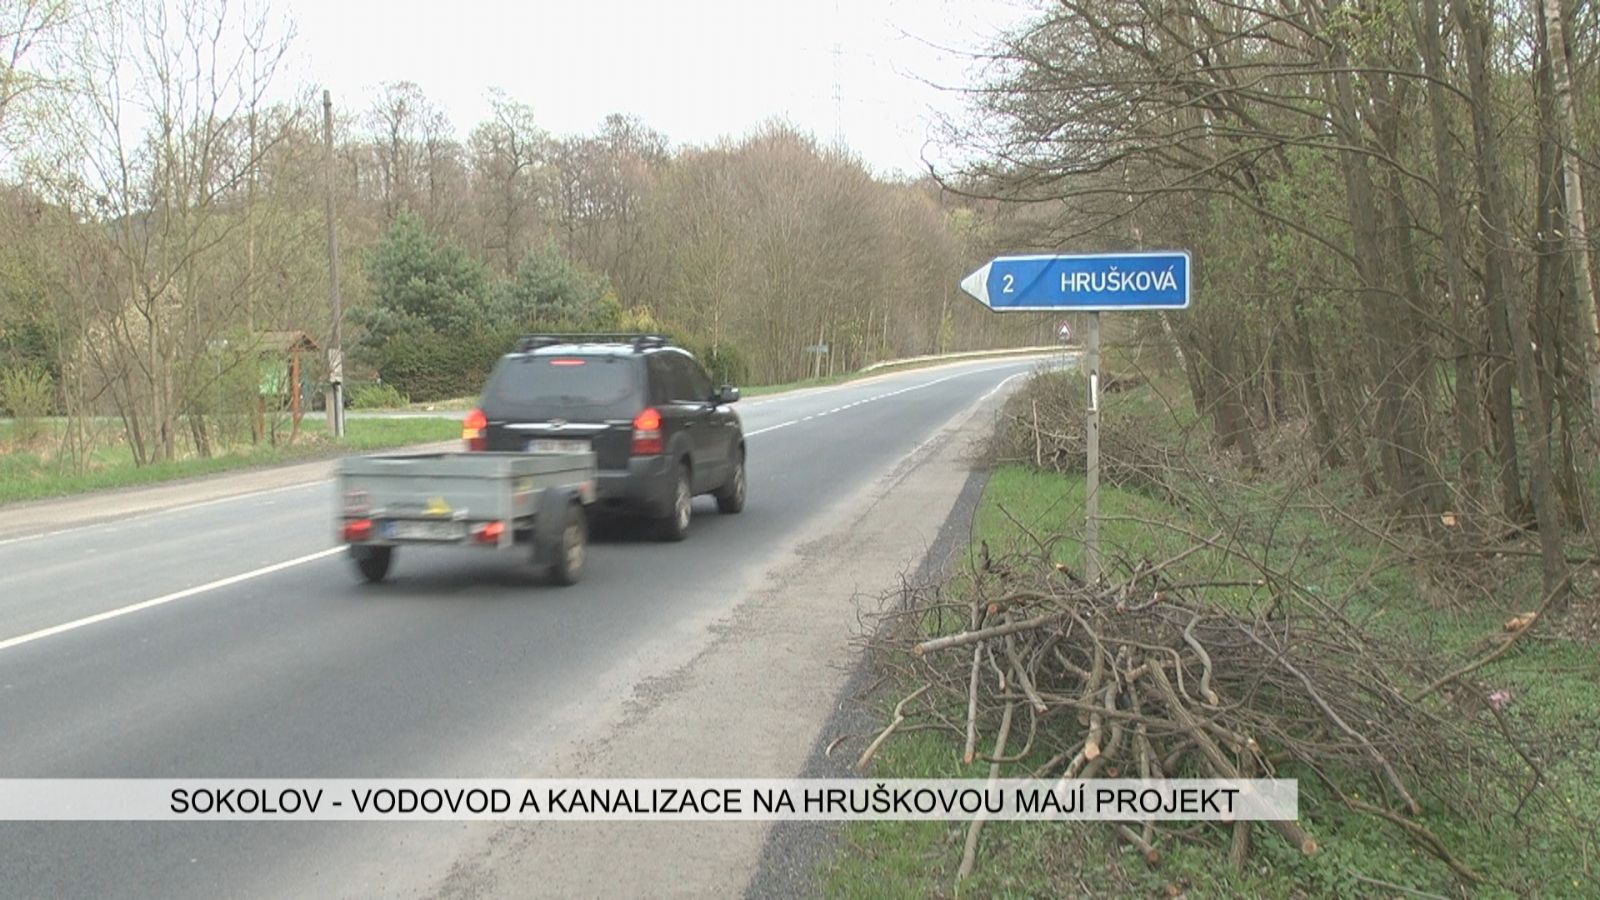 Sokolov: Vodovod a kanalizace na Hruškovou mají projekt (TV Západ)